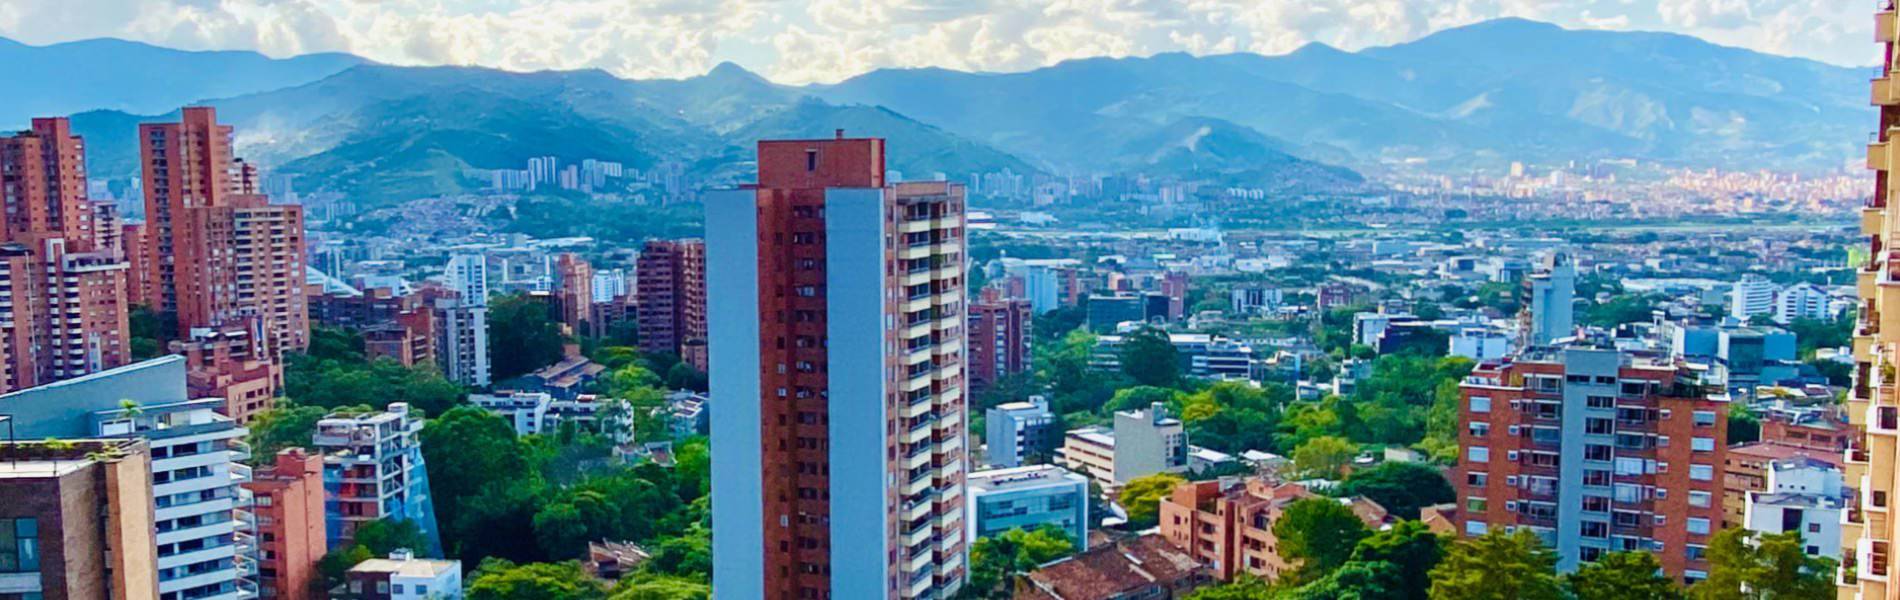  Casa Laureles Hotel Medellín